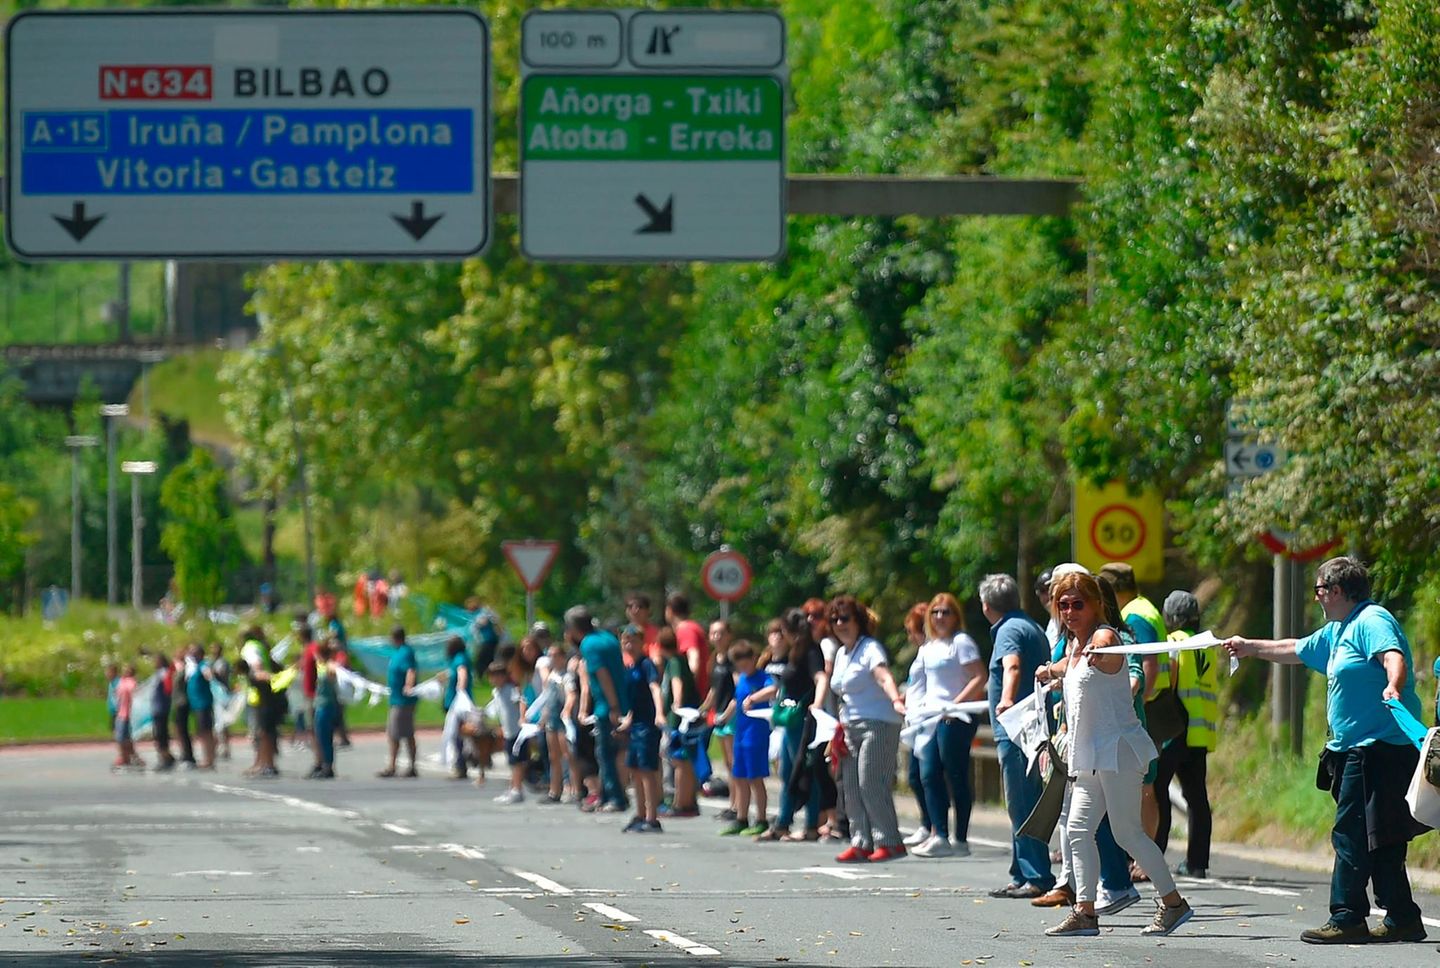 175.000 Basken haben am Samstag eine 200 Kilometer lange Menschenkette zwischen San Sebastián und Vitoria gebildet. Die Organisation "Gure esku dago" (Es liegt in unseren Händen) hatte zu der Demonstration für das Recht auf freie Selbstbestimmung aufgerufen.